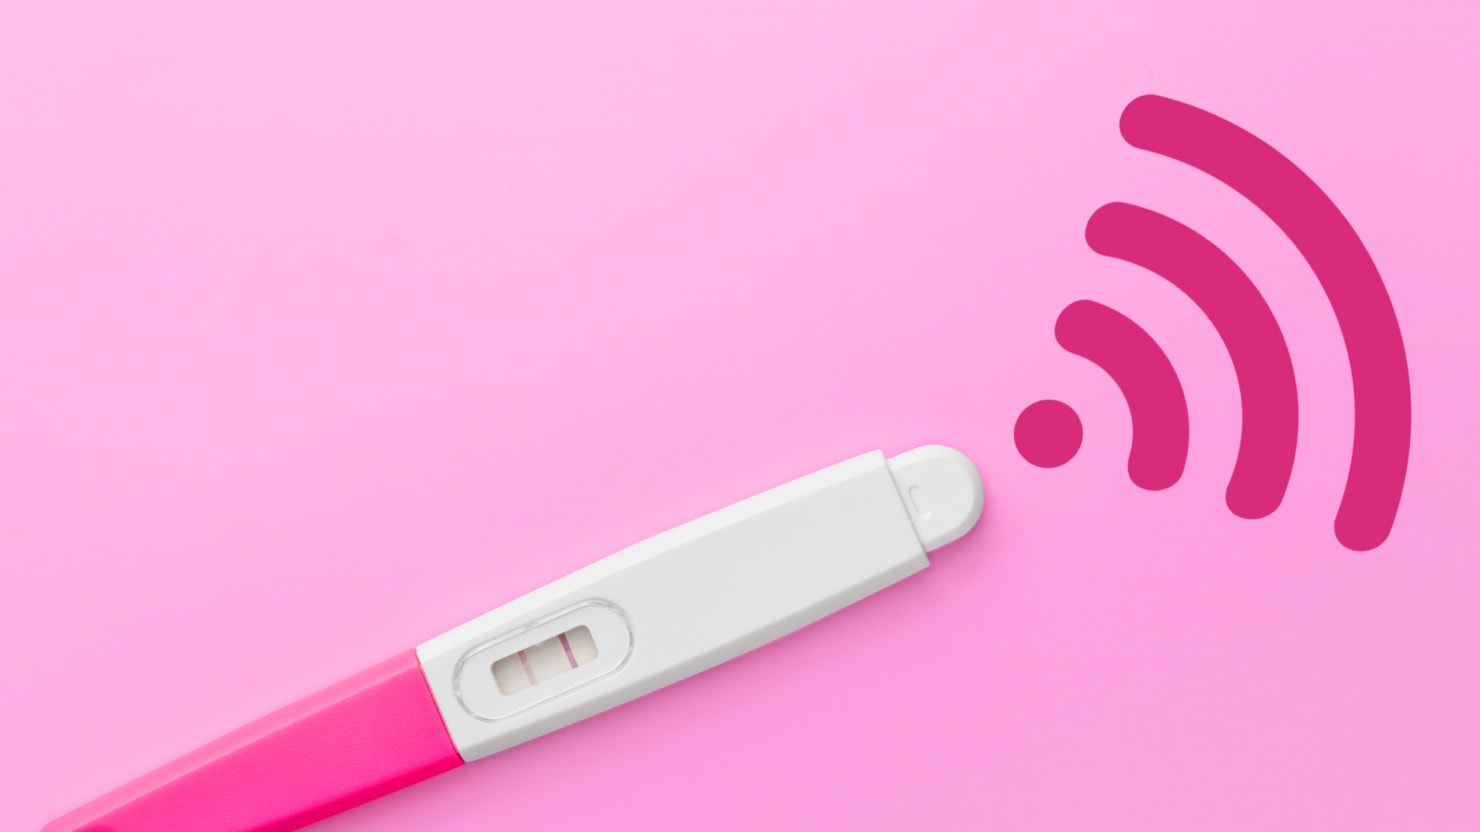 First Response unveils Bluetooth pregnancy test